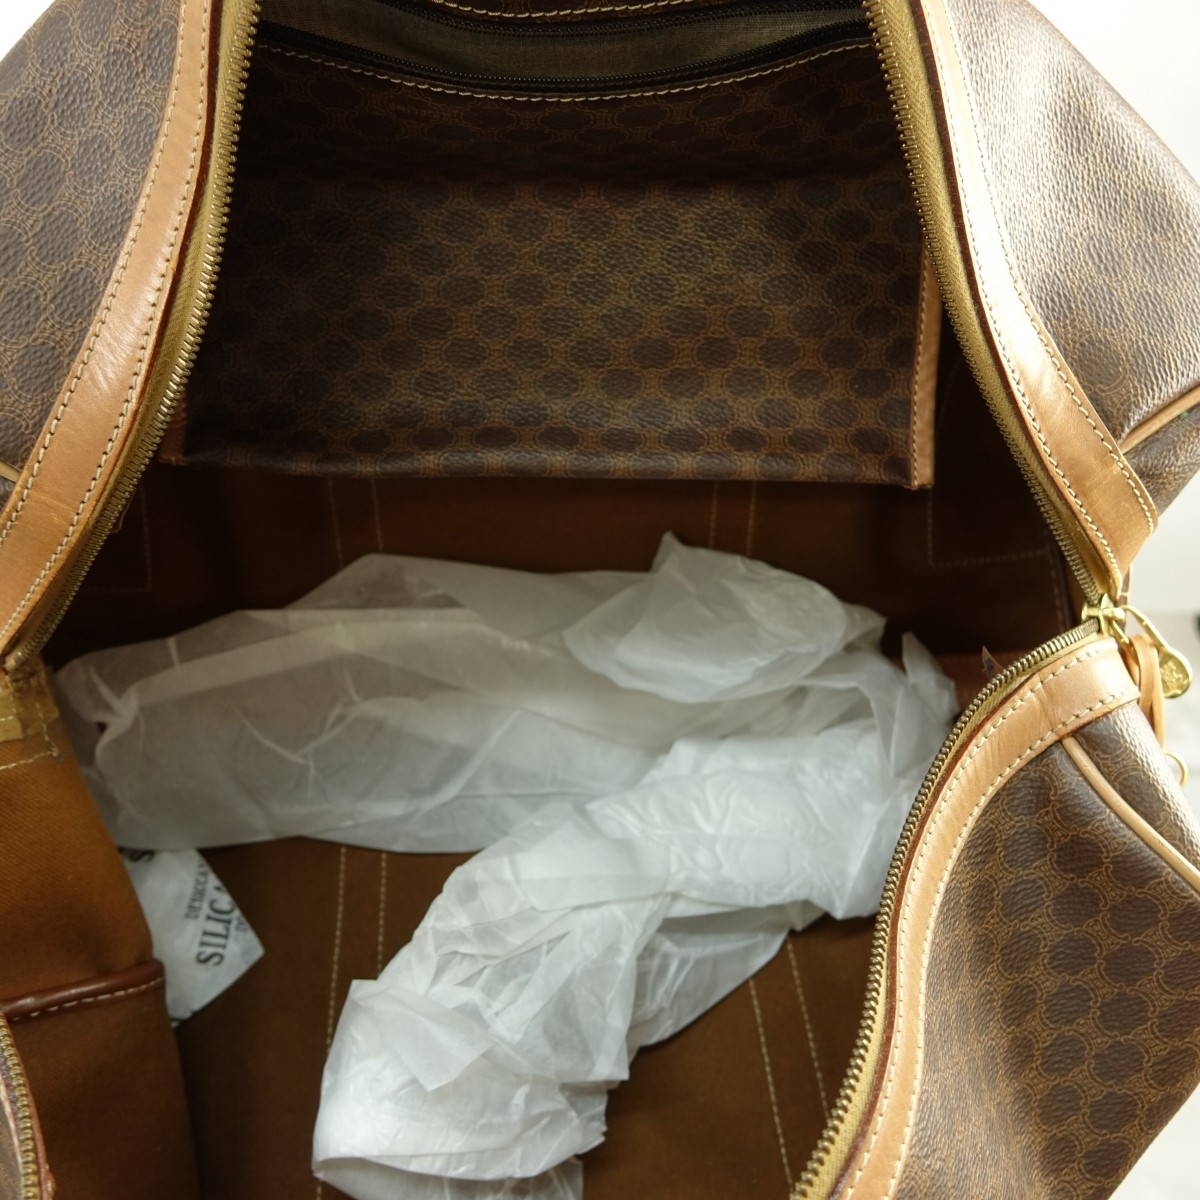 Celine Travel Bag